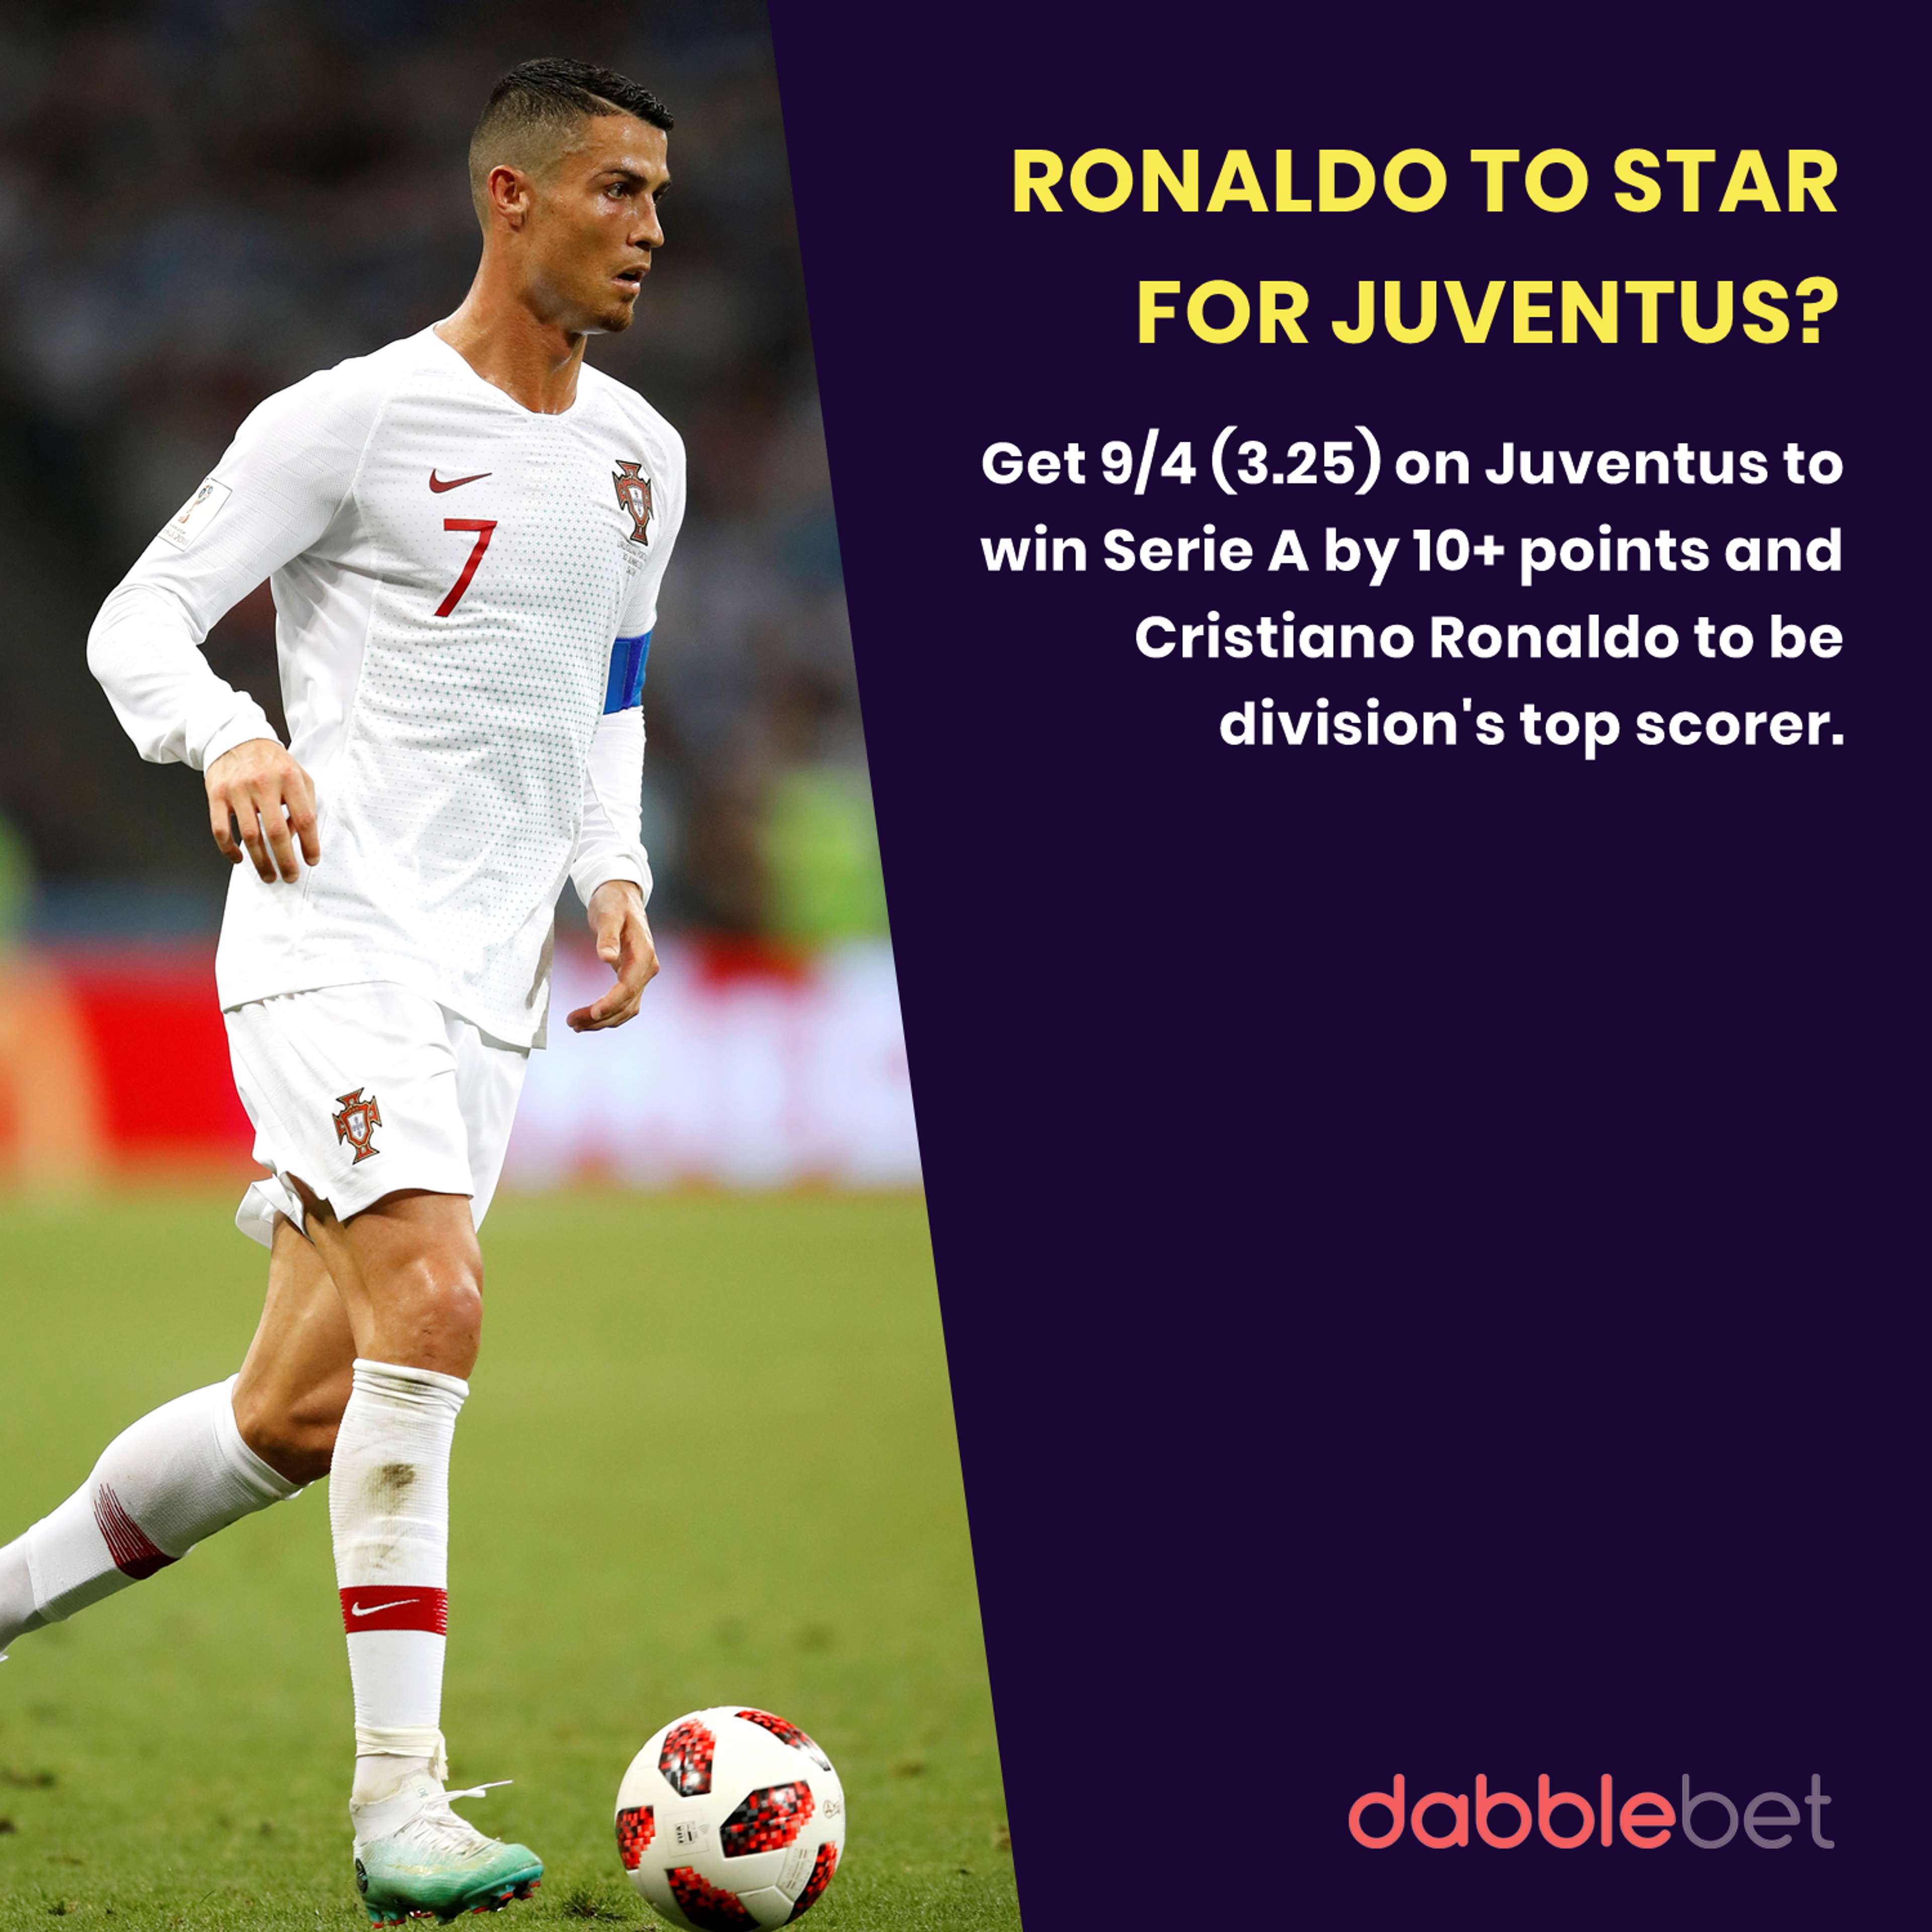 dabblebet enhanced odds Ronaldo and Juventus Serie A